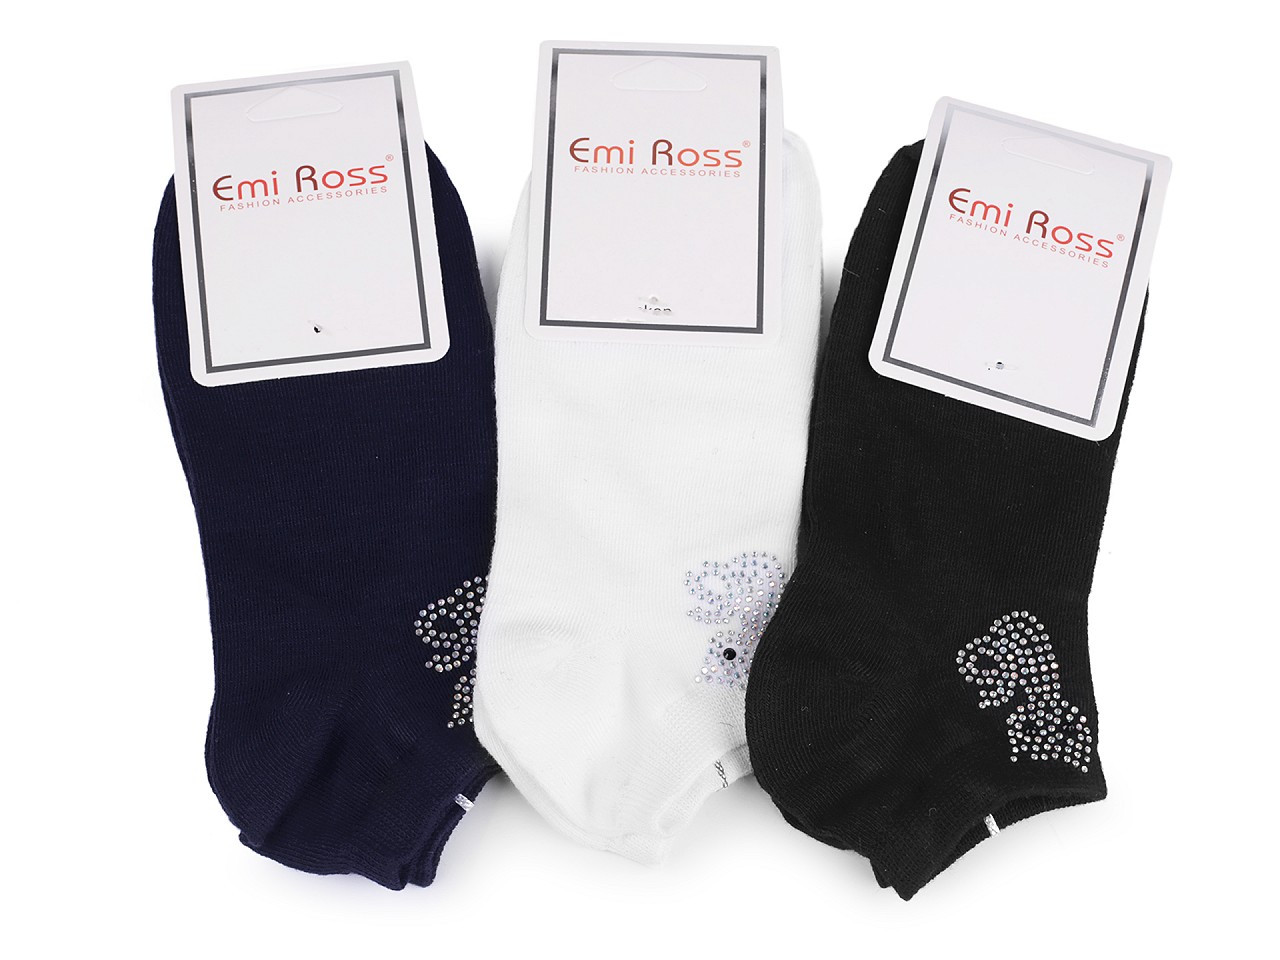 Dámské bavlněné ponožky kotníkové s kamínky Emi Ross, barva 4 (vel. 35-38) mix